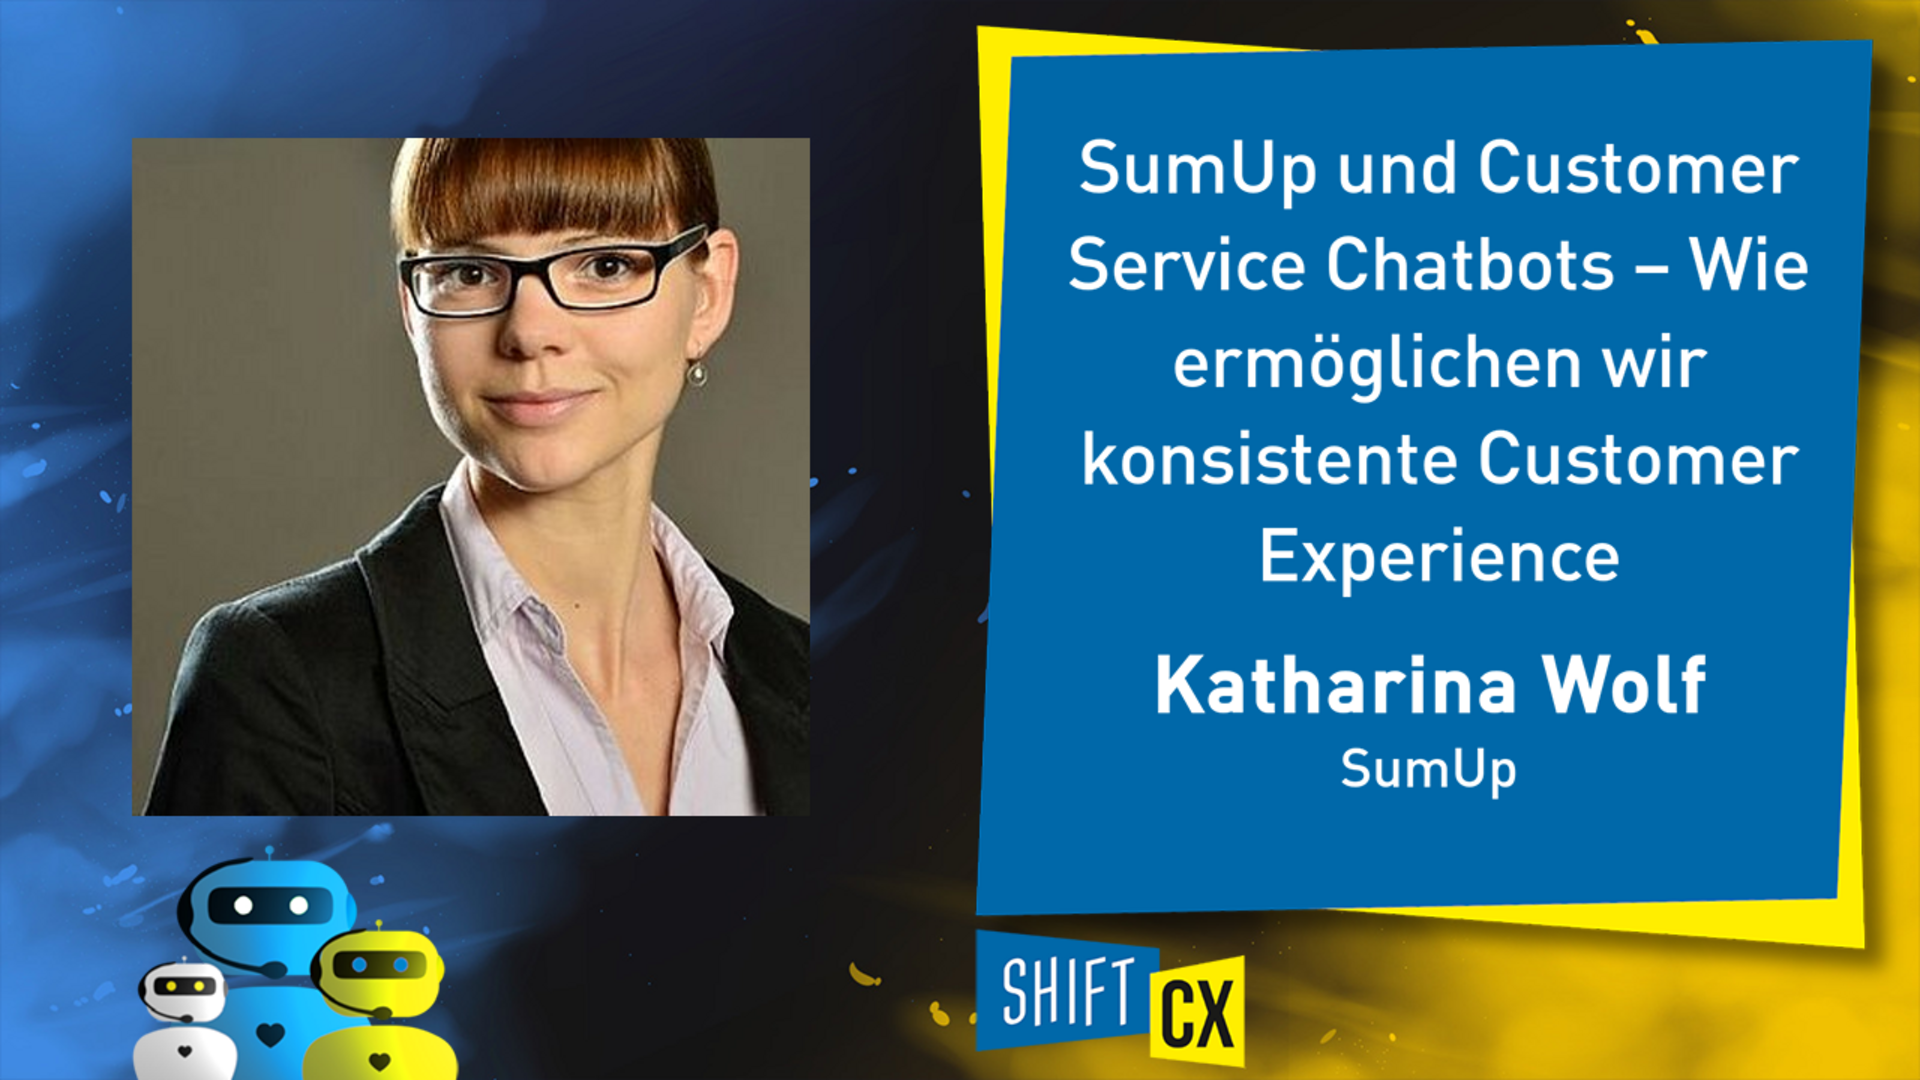 SumUp und Customer Service Chatbots – Wie ermöglichen wir konsistente Customer Experience länderübergreifend und in verschiedenen Kommunikationskanälen?